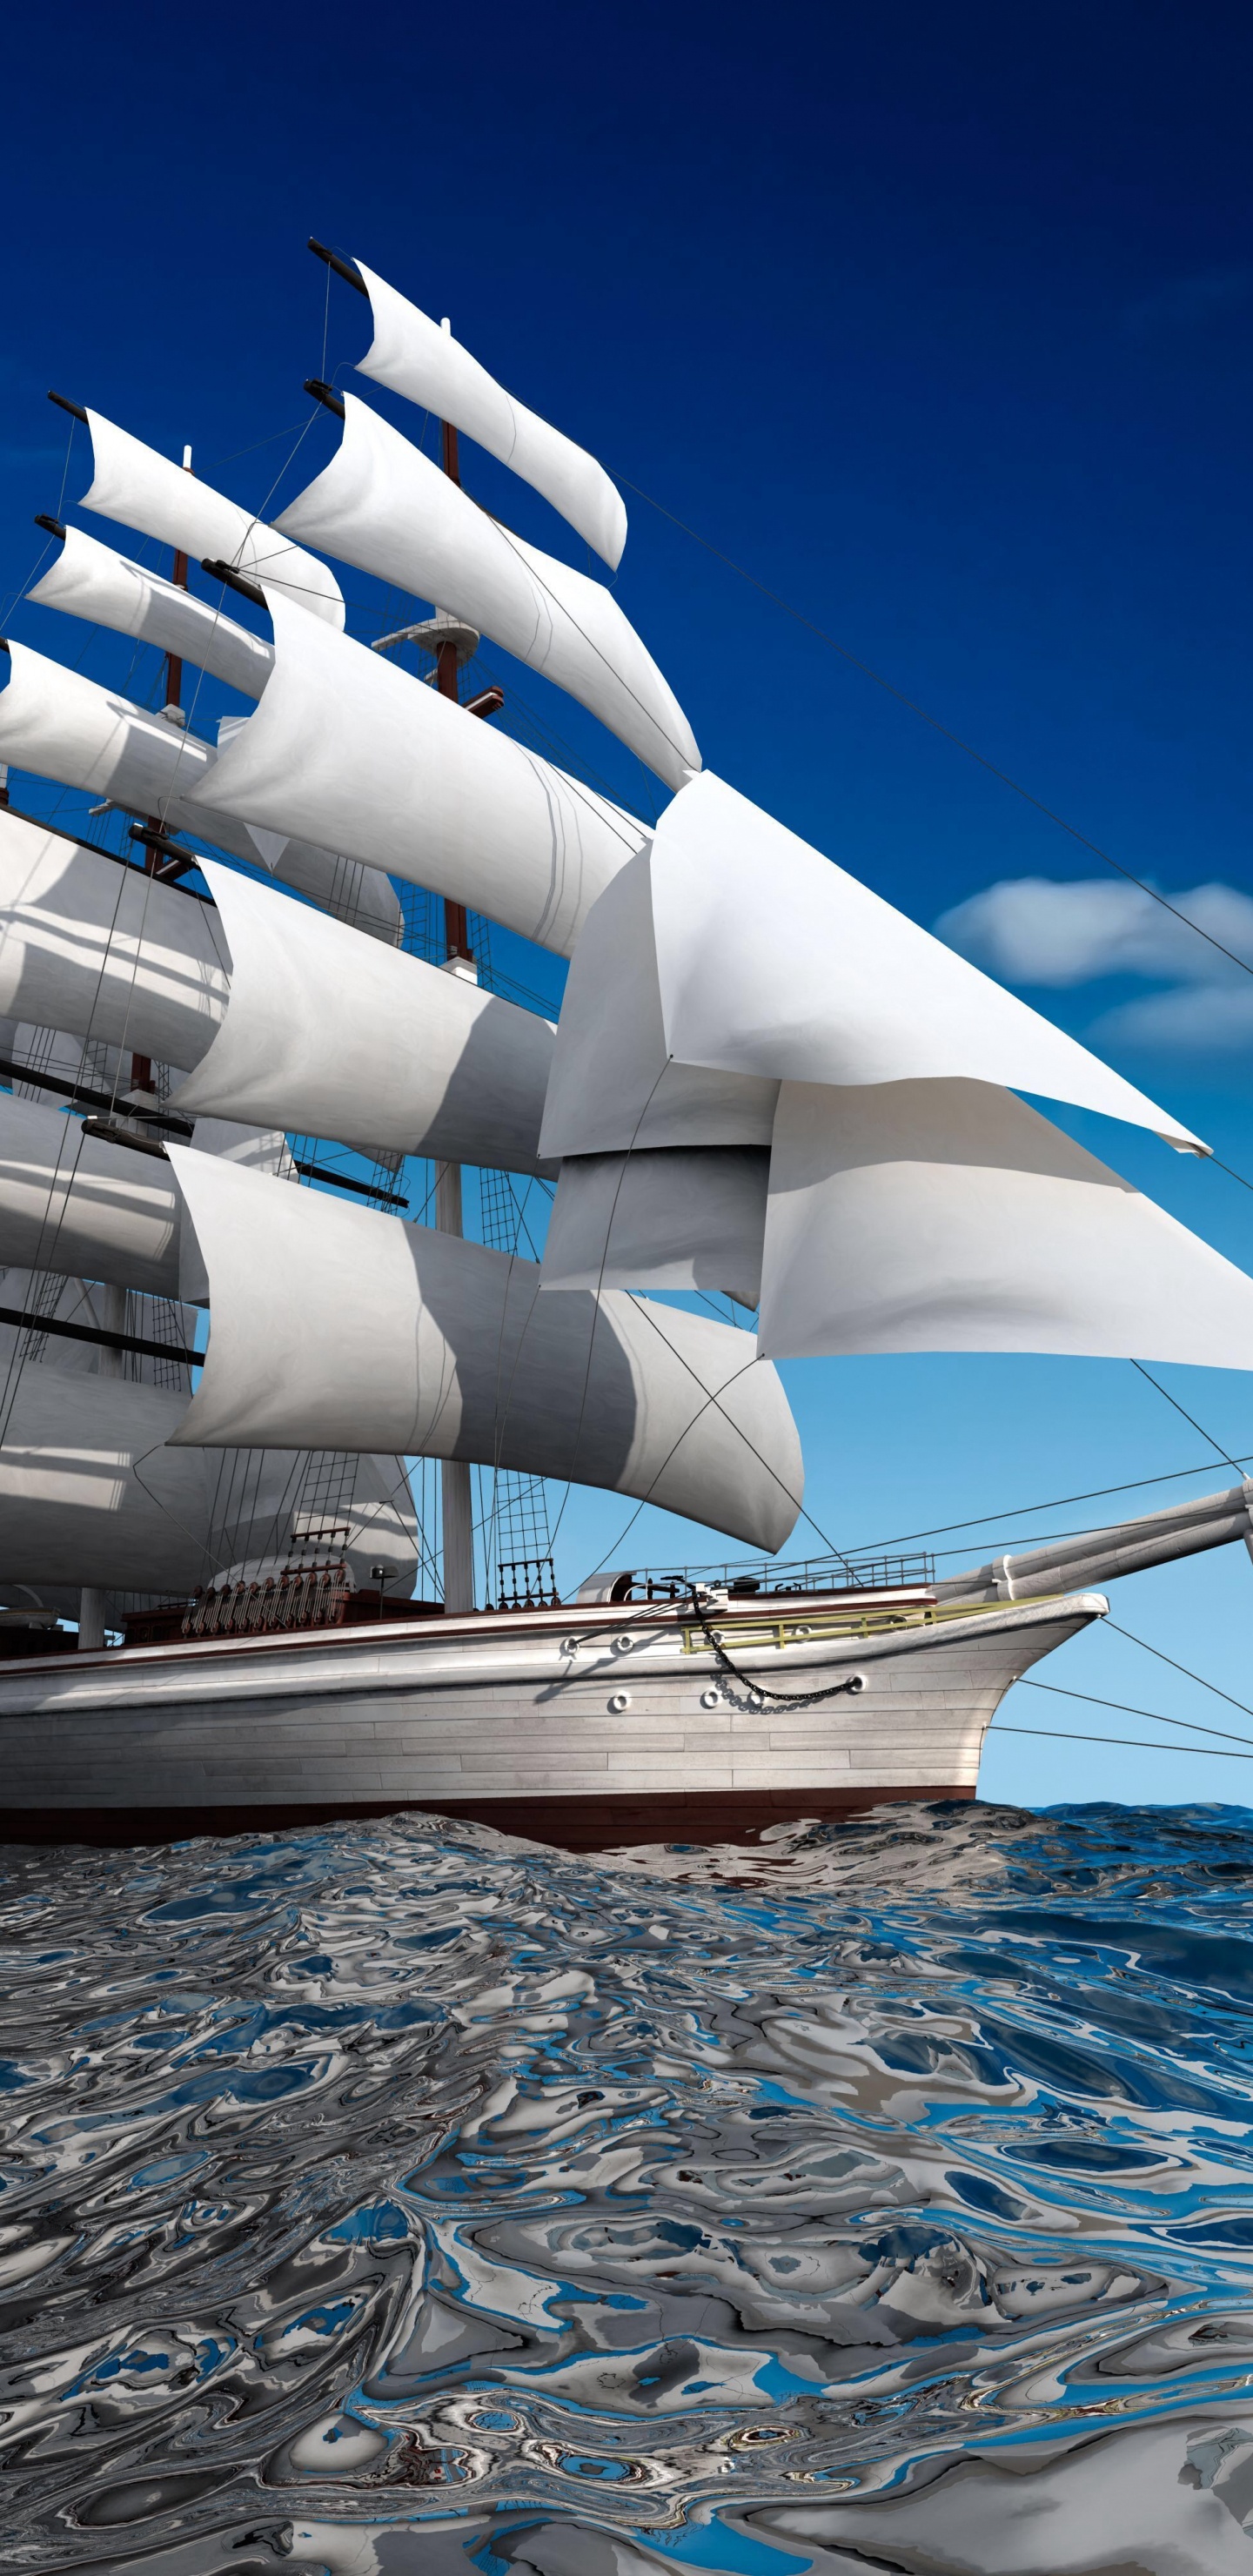 船只, 扬帆, 水运, 高船, 布里格 壁纸 1440x2960 允许